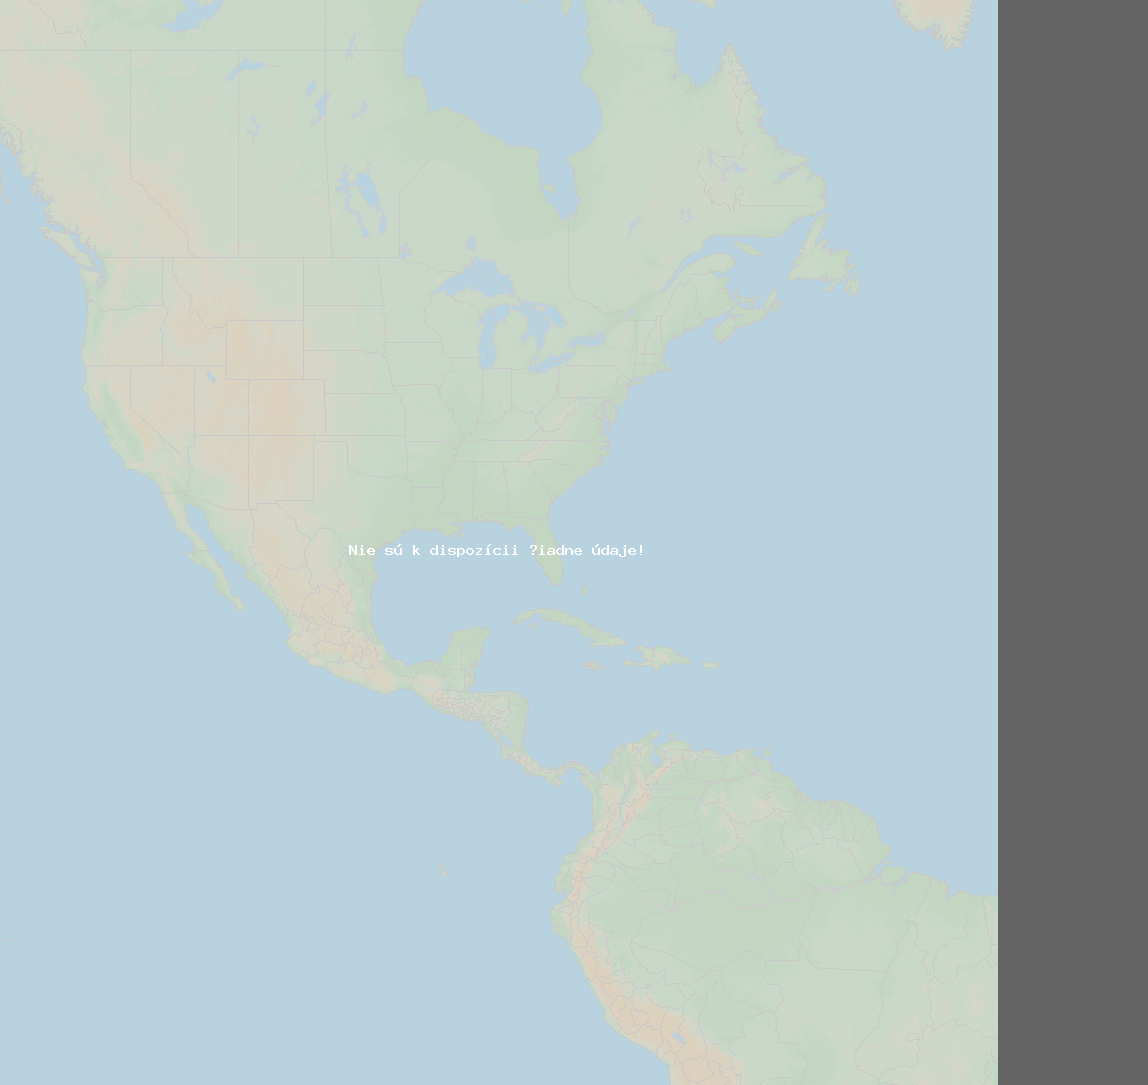 Pomer bleskov (Stanica Haleakala) North America 2020 Apríl